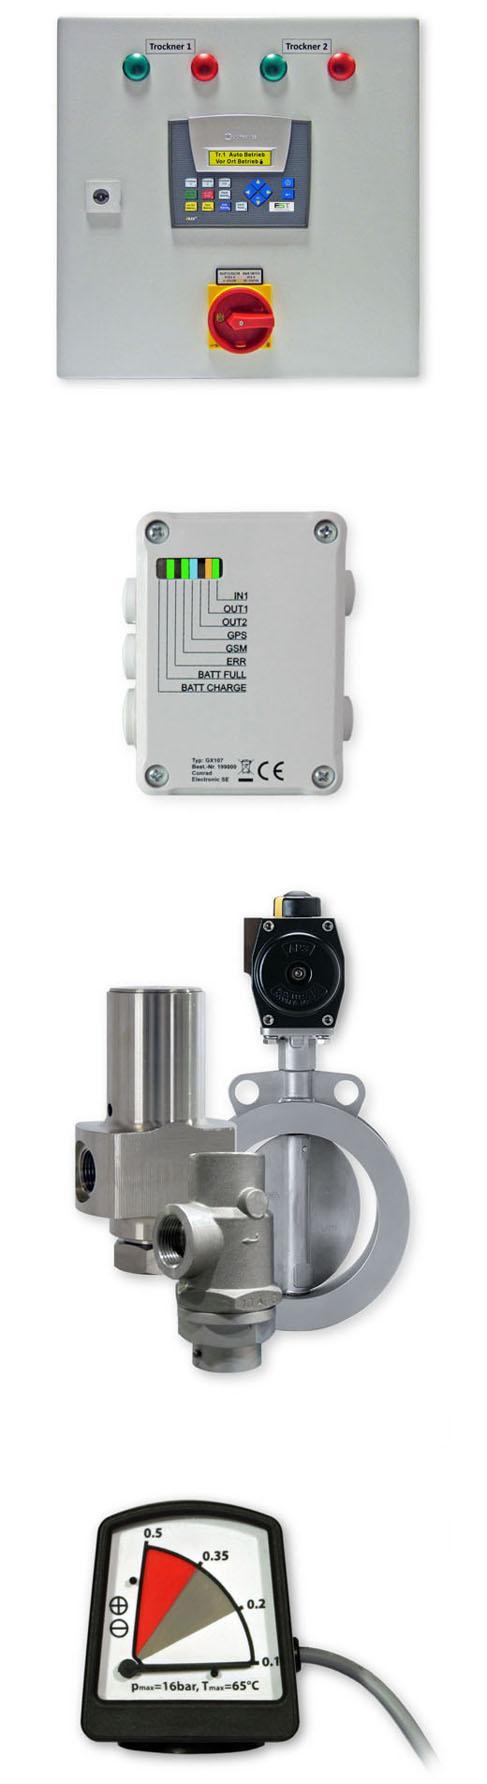 Accessori La centralina di controllo DA-CM1-230 è utilizzata per controllare due essiccatori ad adsorbimento ridondanti in una centrale aria compressa.